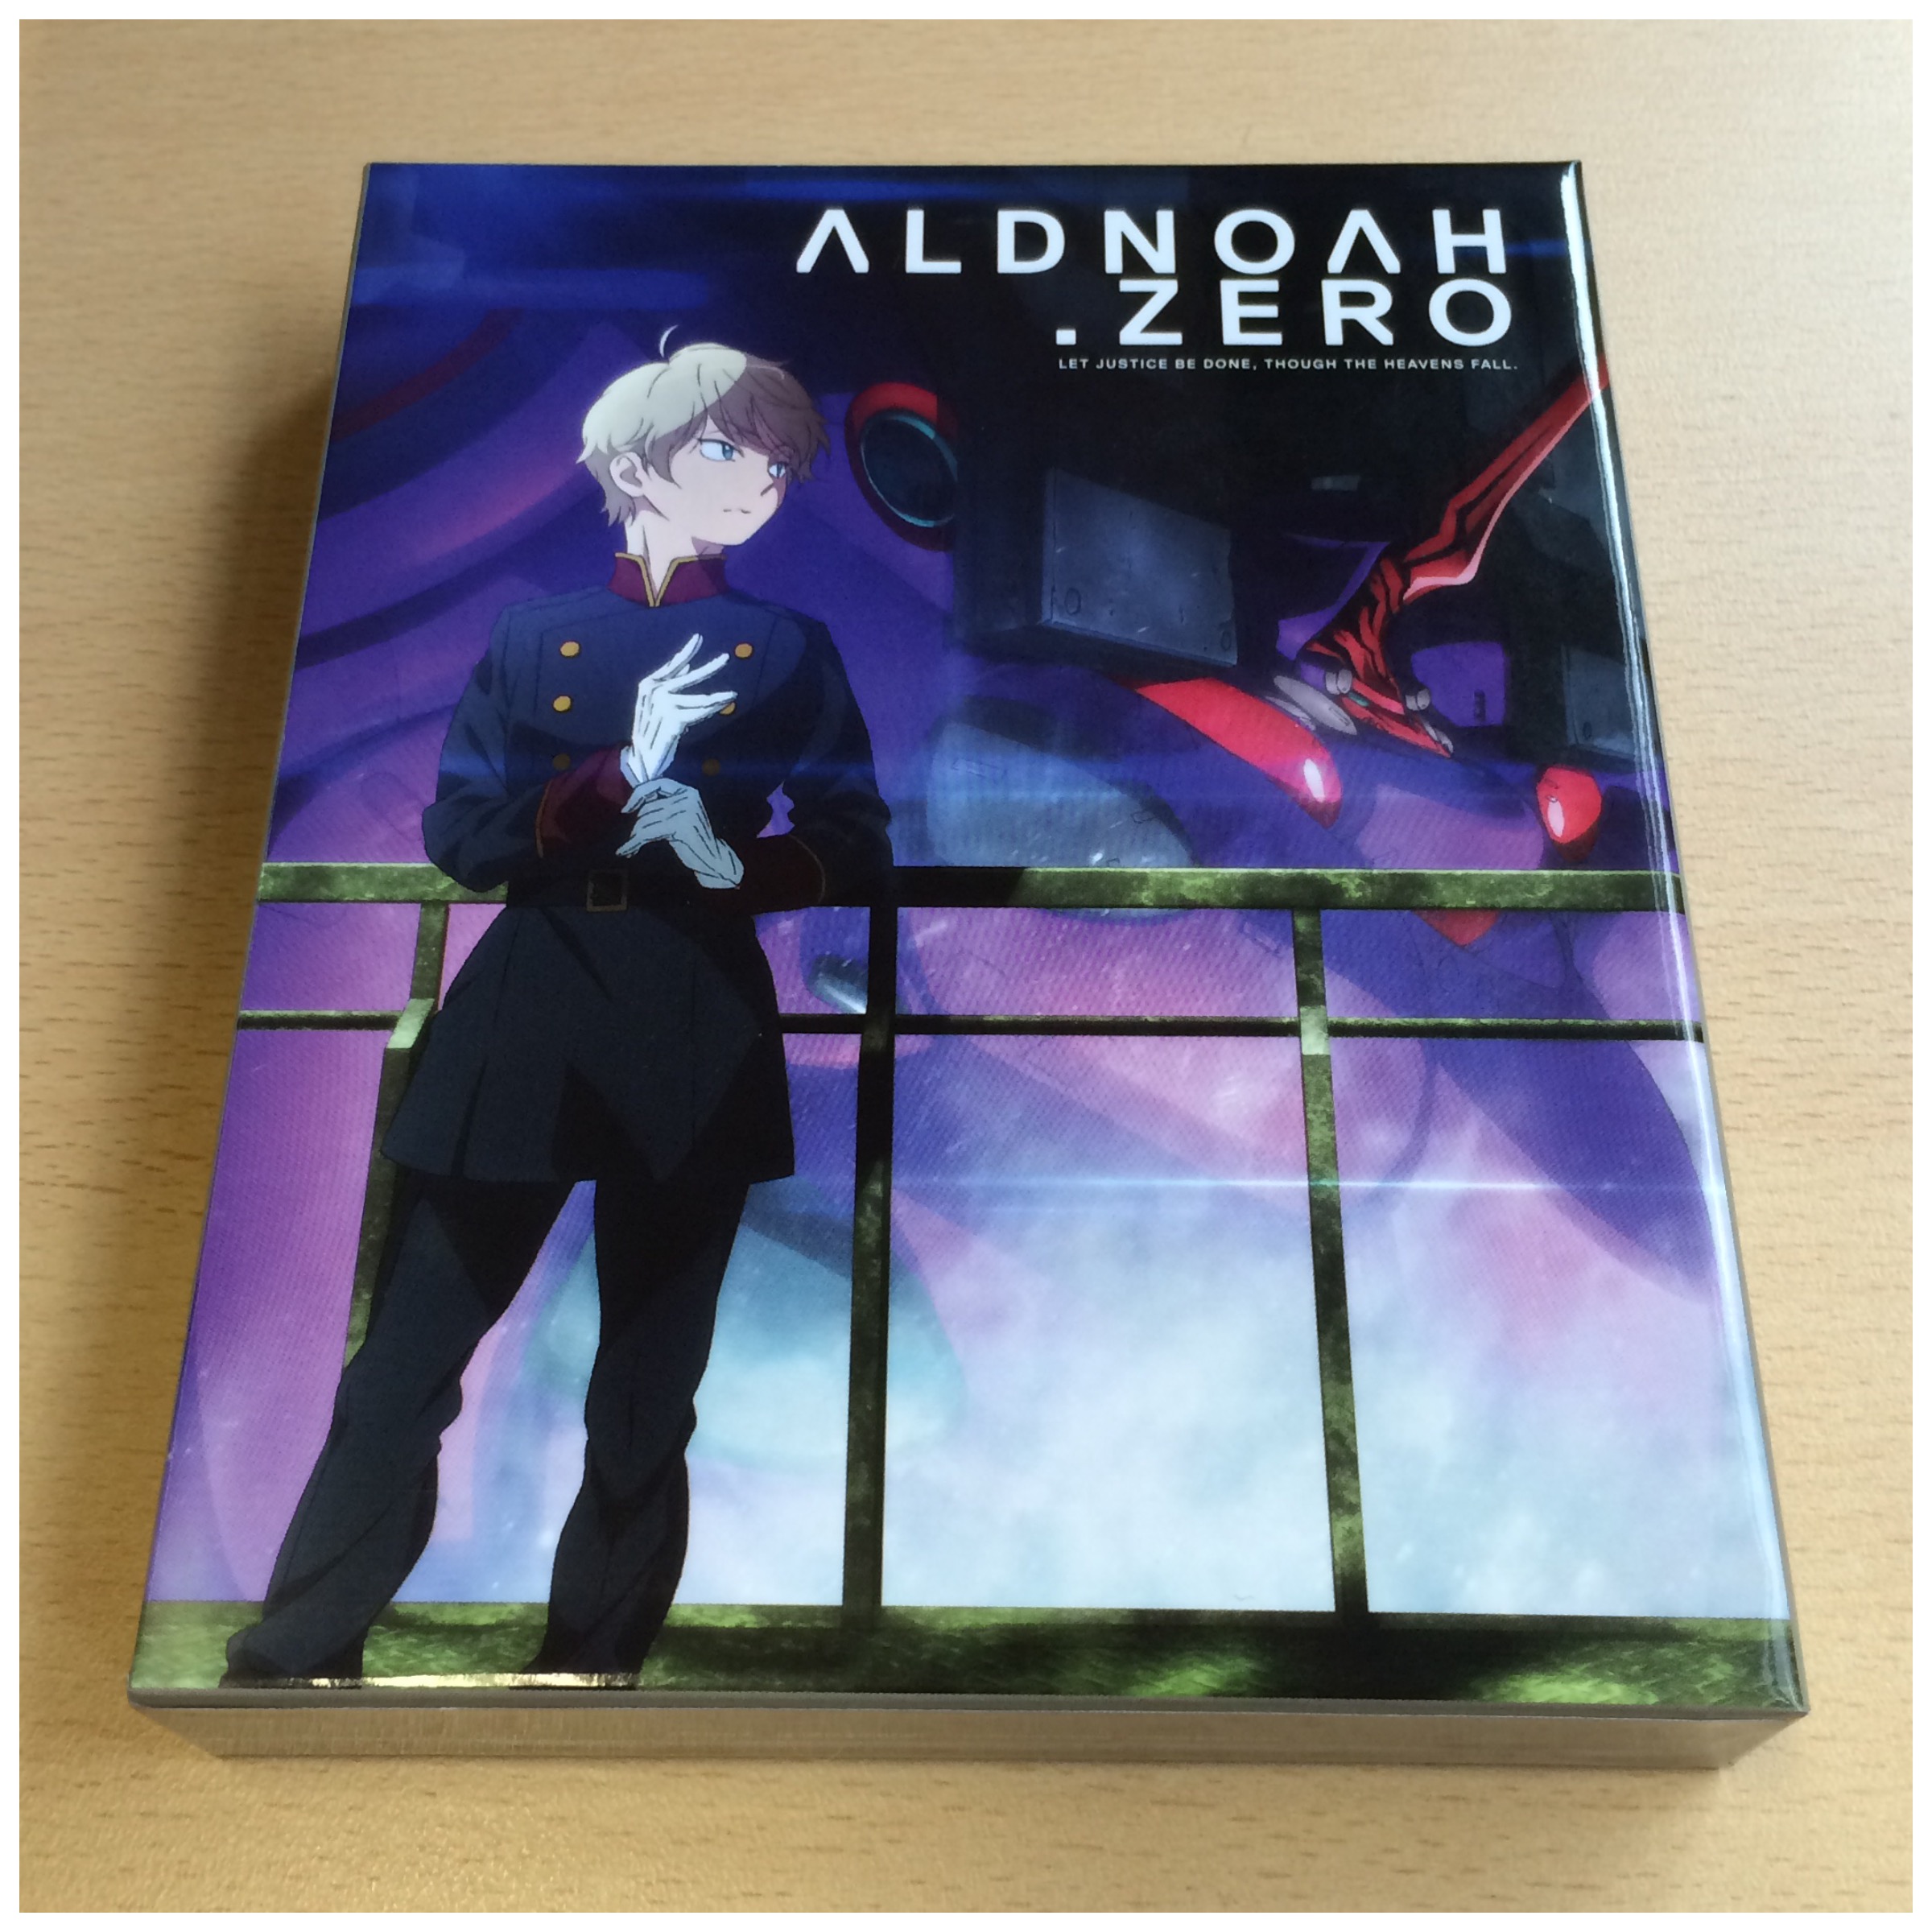  Review for Aldnoah.Zero - Season 1 Collector's